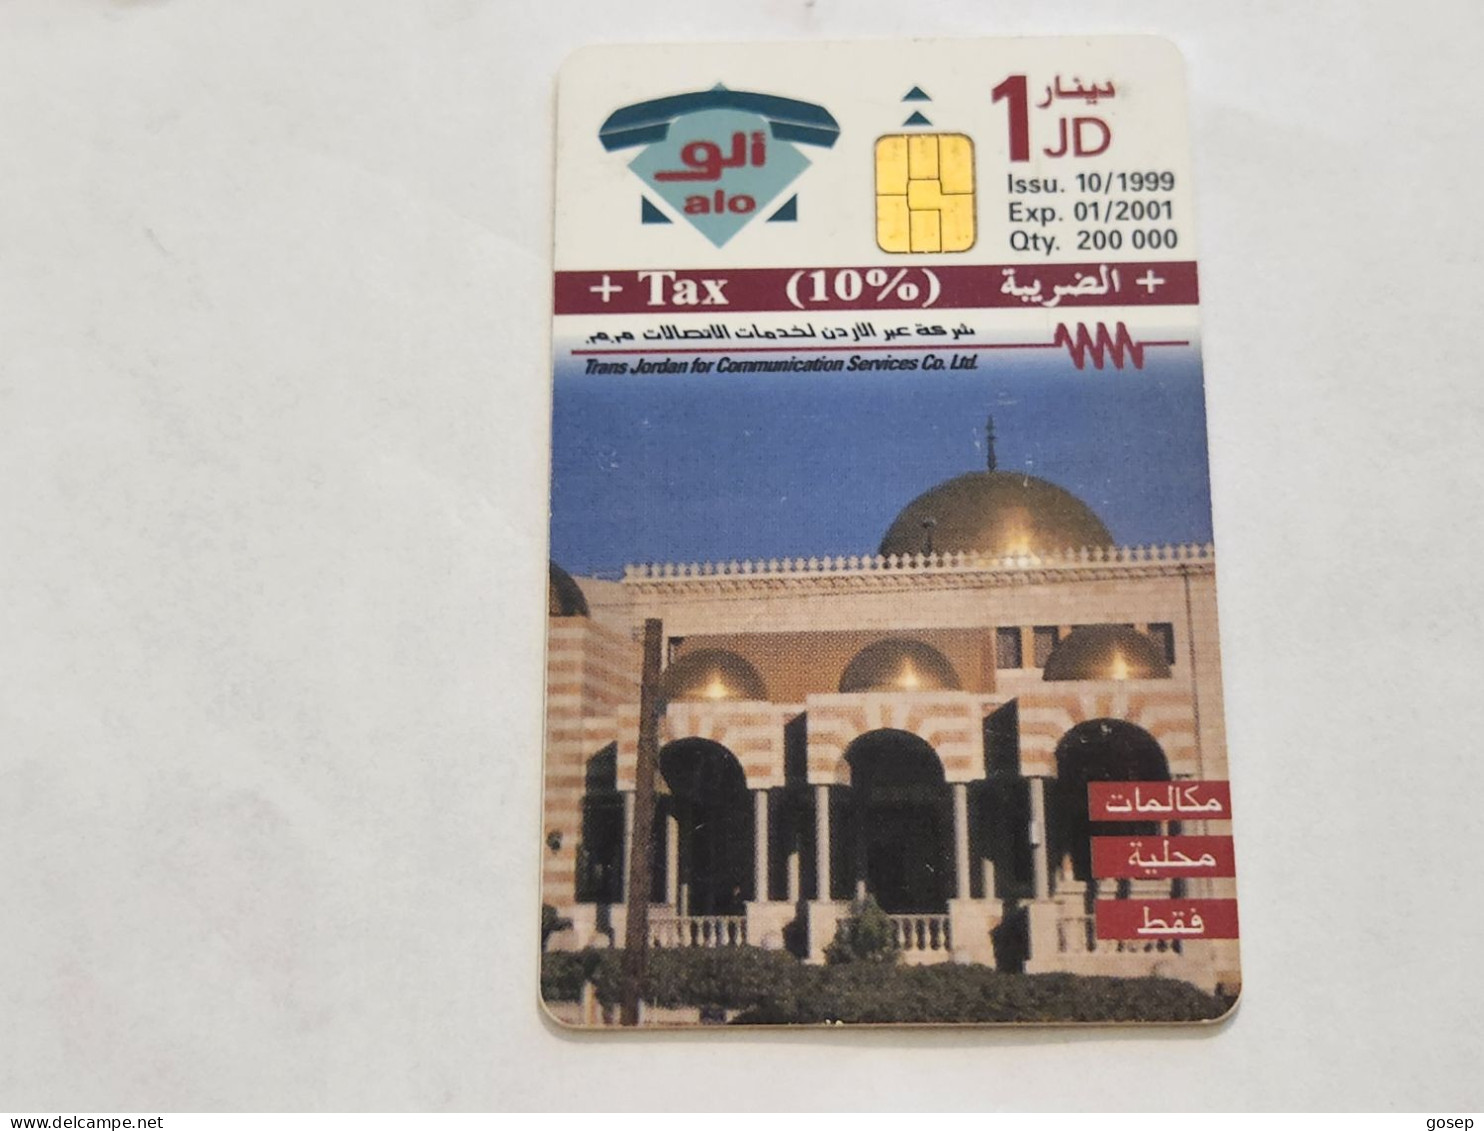 JORDAN-(JO-ALO-0066)-Mosque-(184)-(1002-942525)-(1JD)-(01/2001)-used Card+1card Prepiad Free - Jordanien